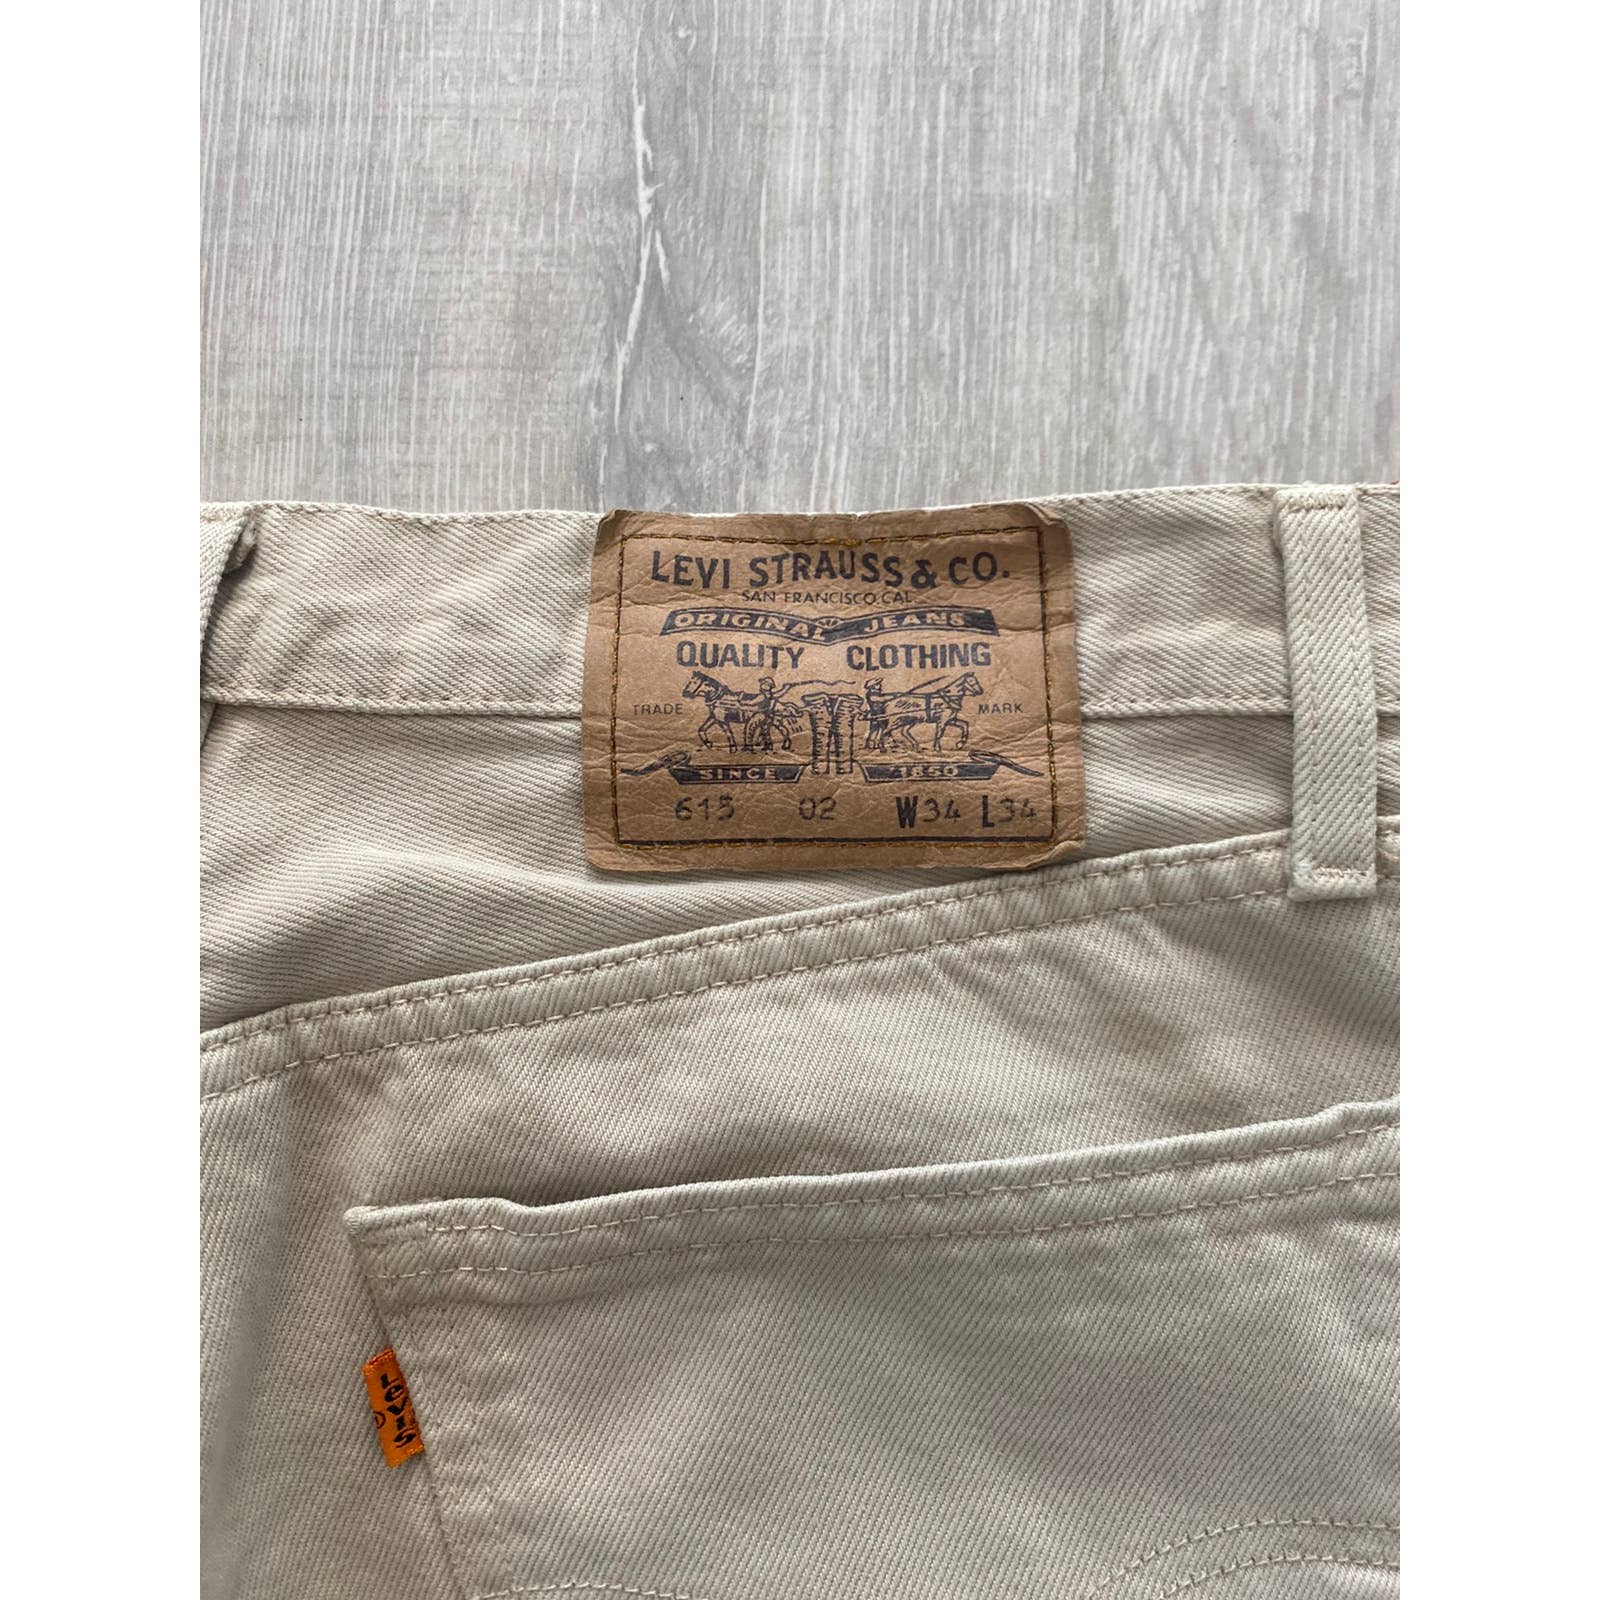 90s 615 02 vintage Orange tab beige jeans denim pants – re.fitted